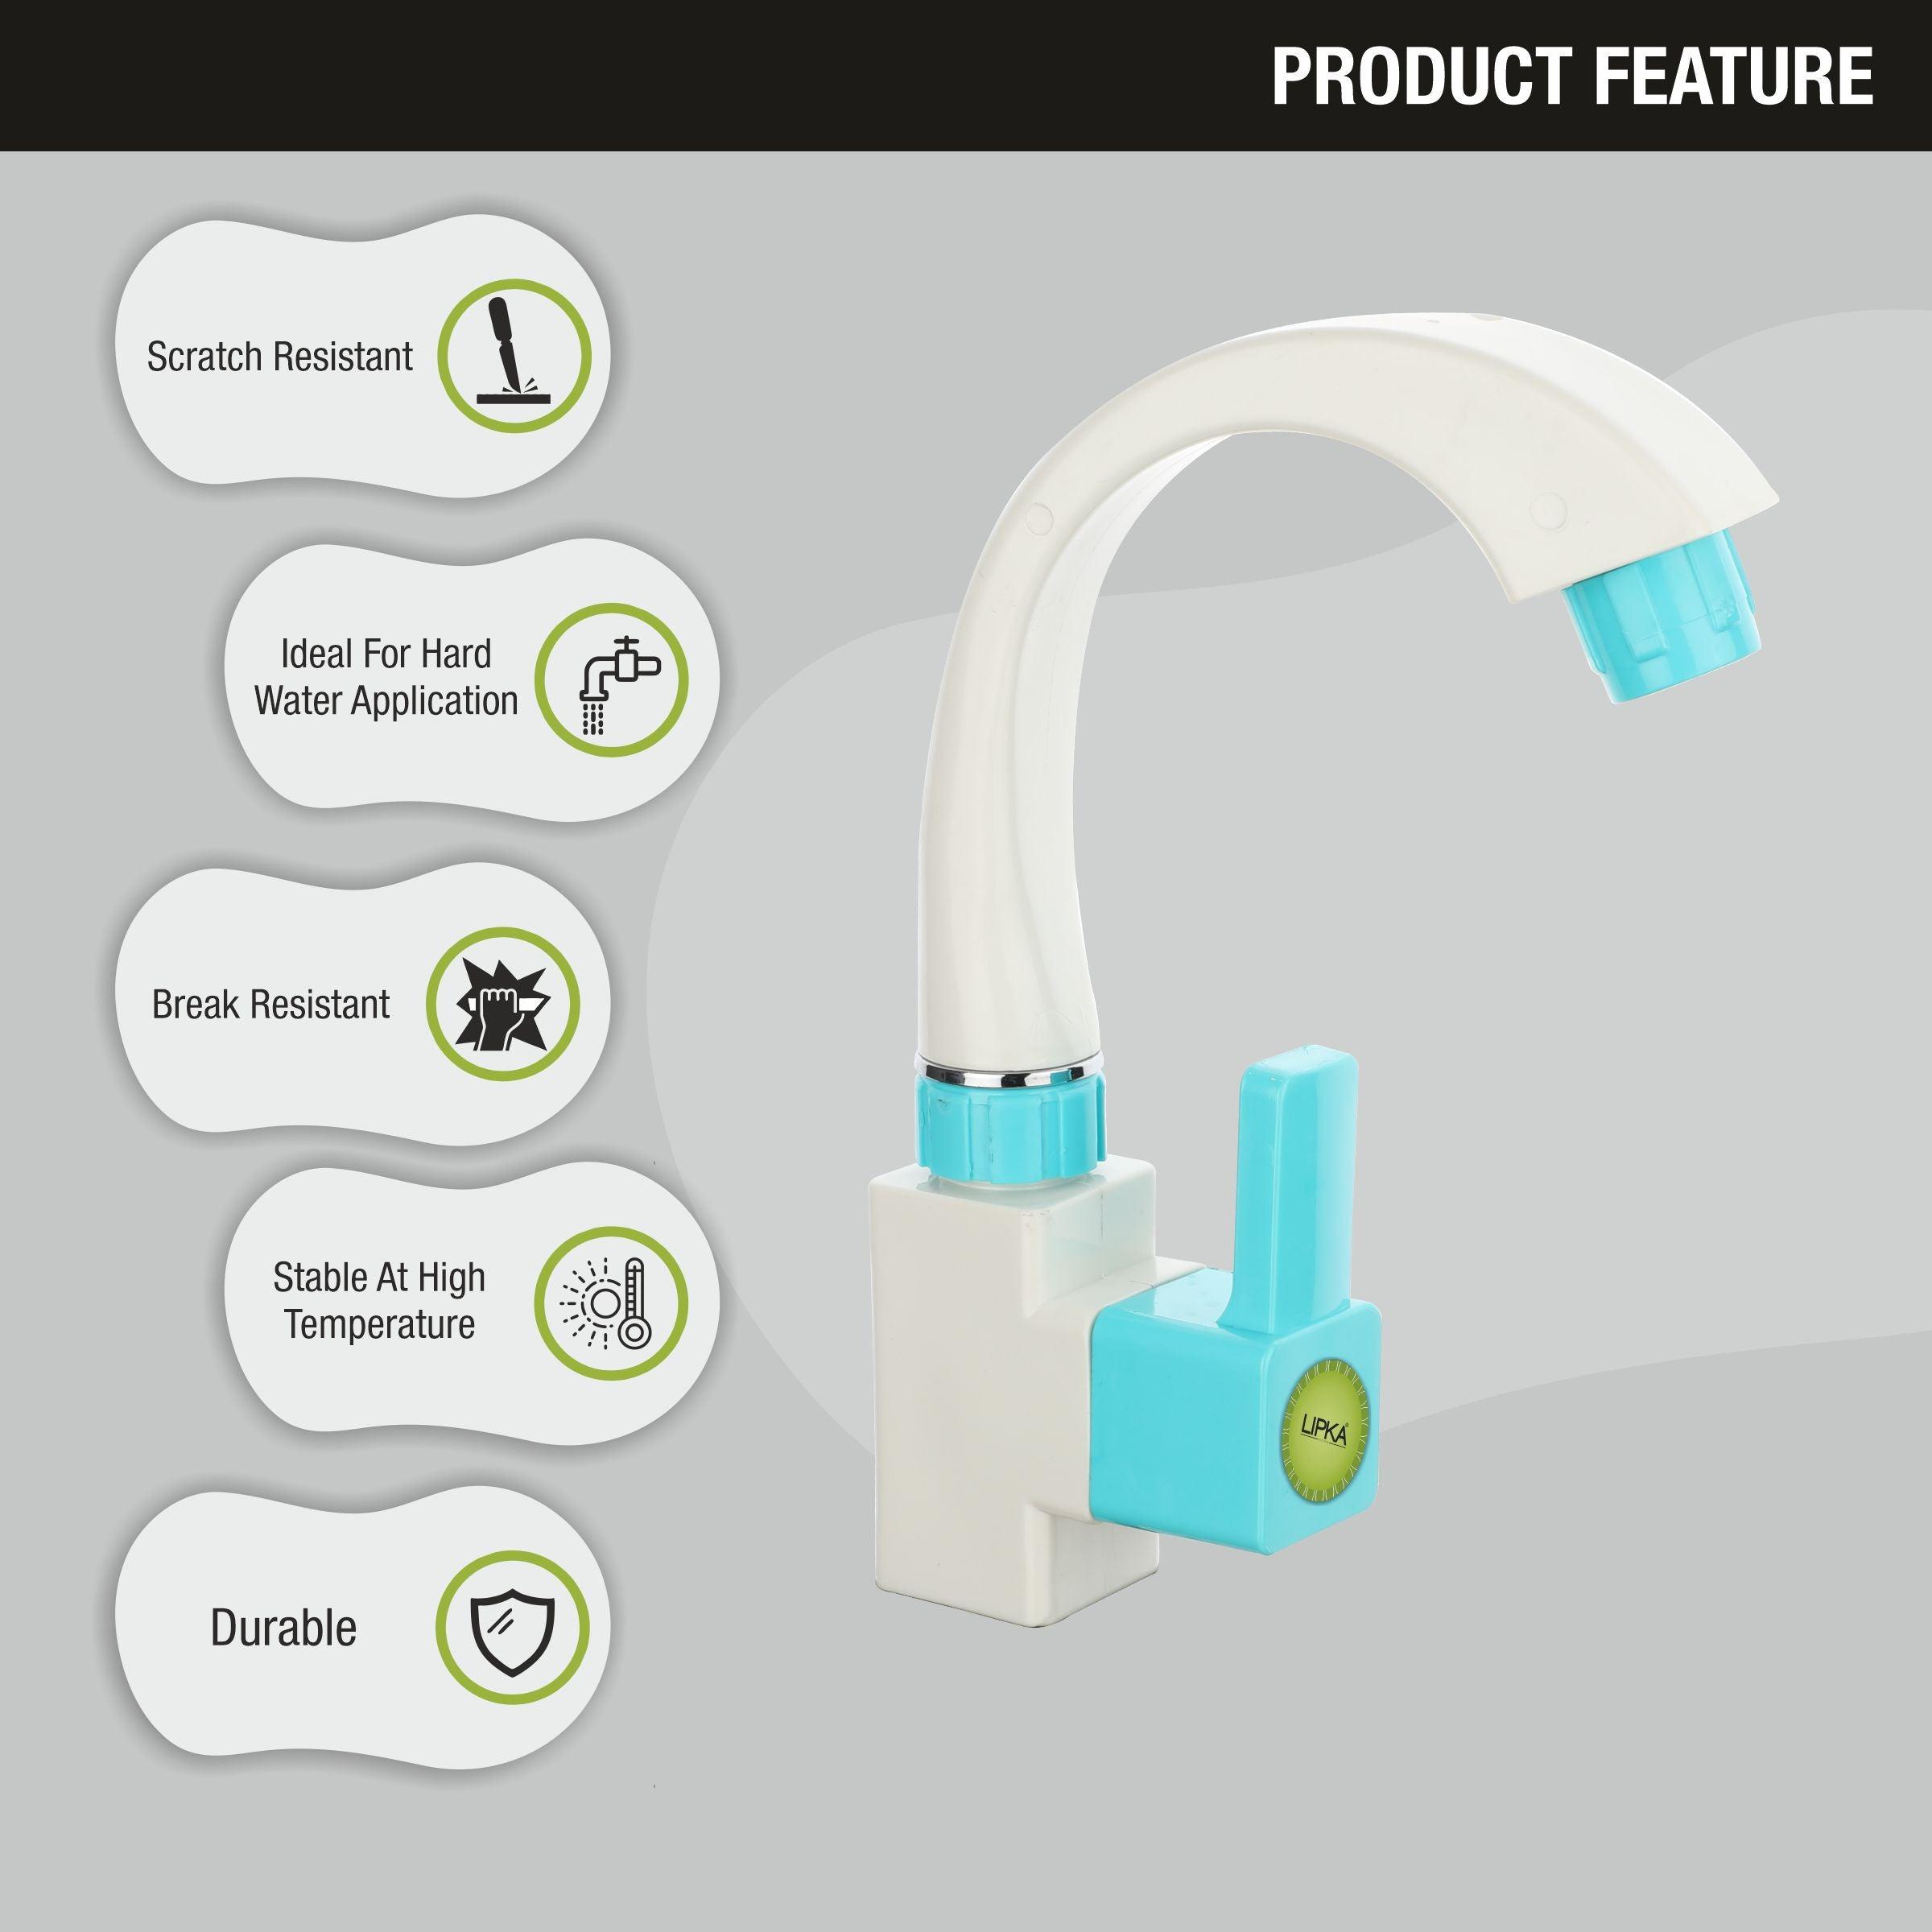 Aura PTMT Swan Neck Faucet features